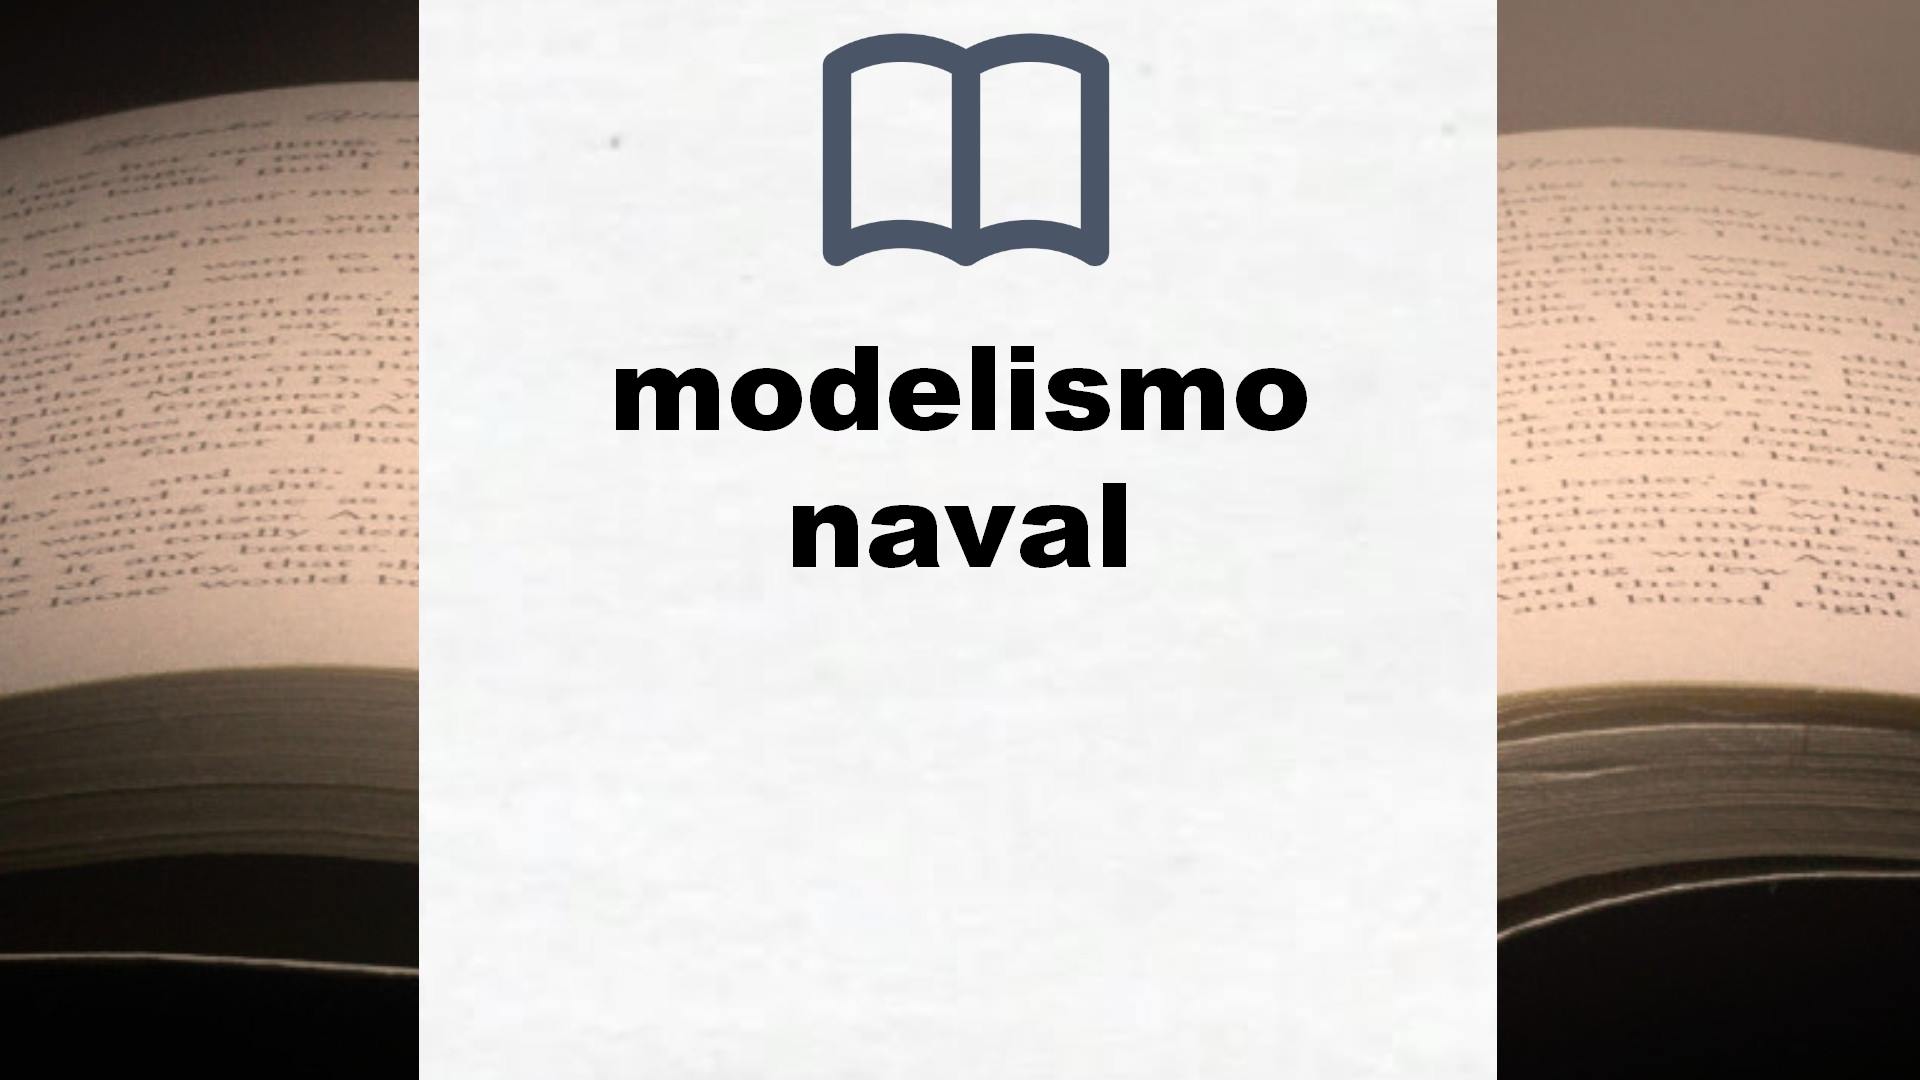 Libros sobre modelismo naval